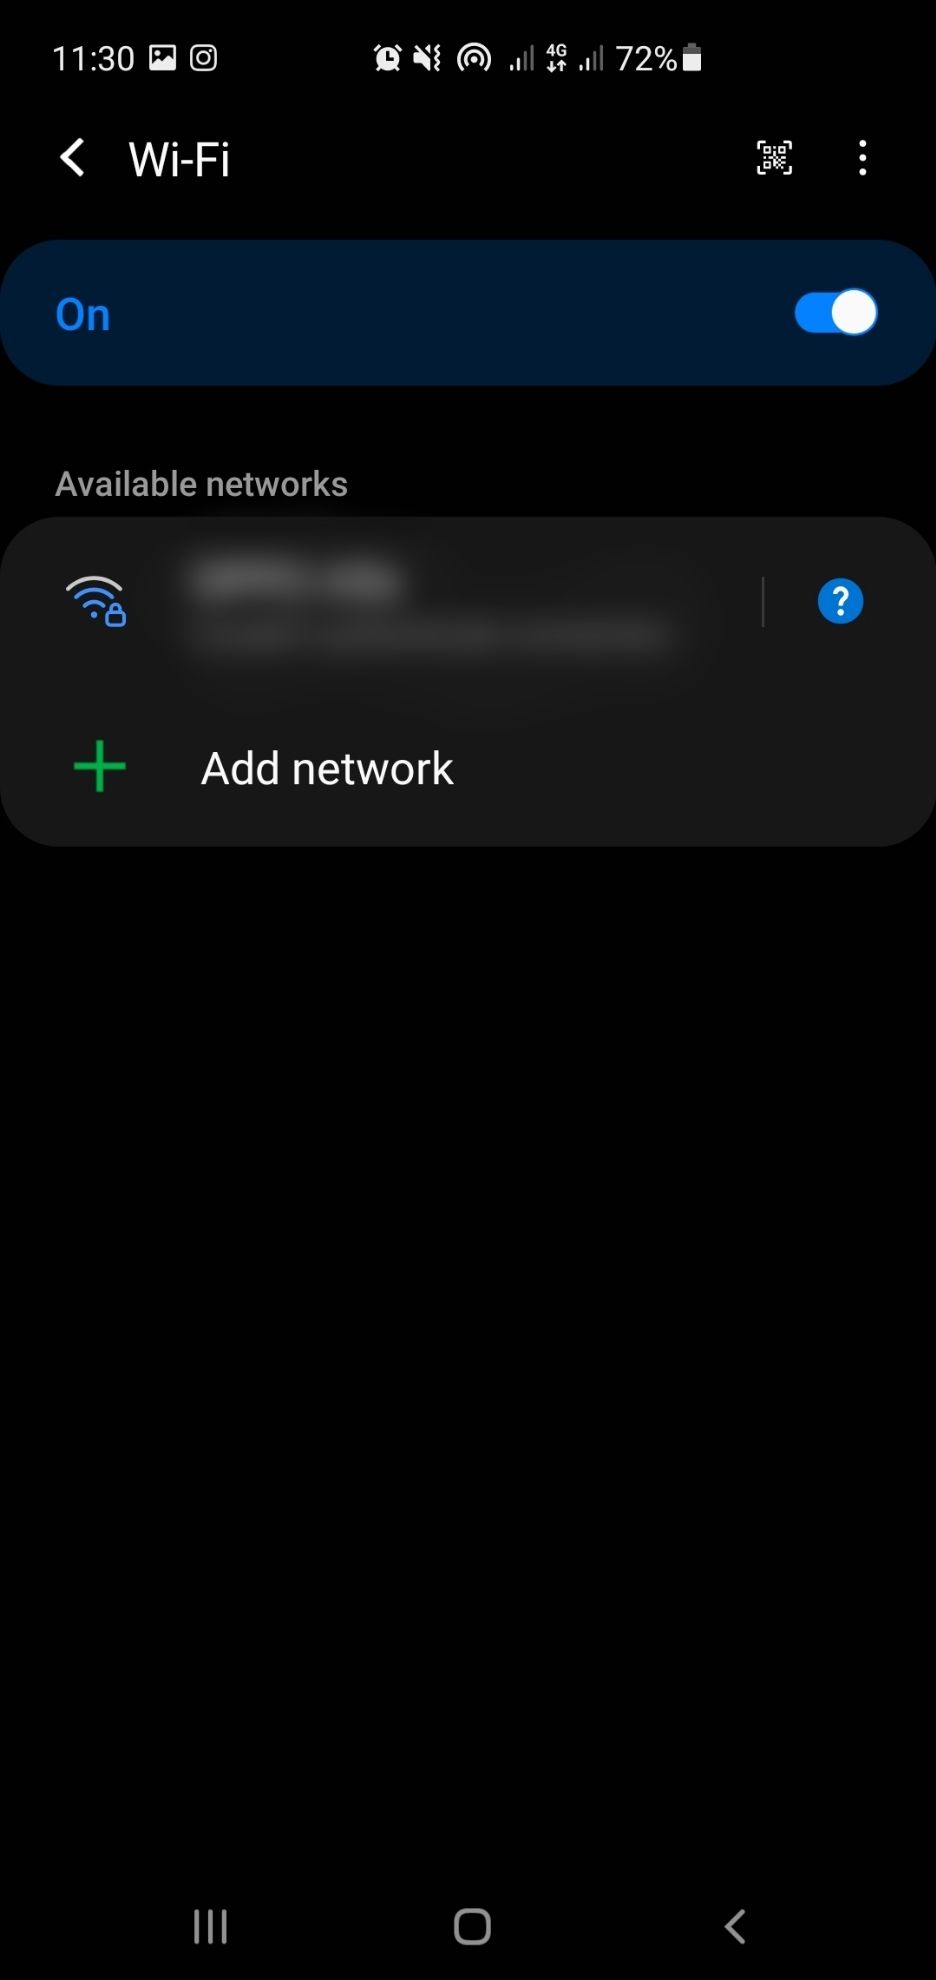 Select Wi-Fi option